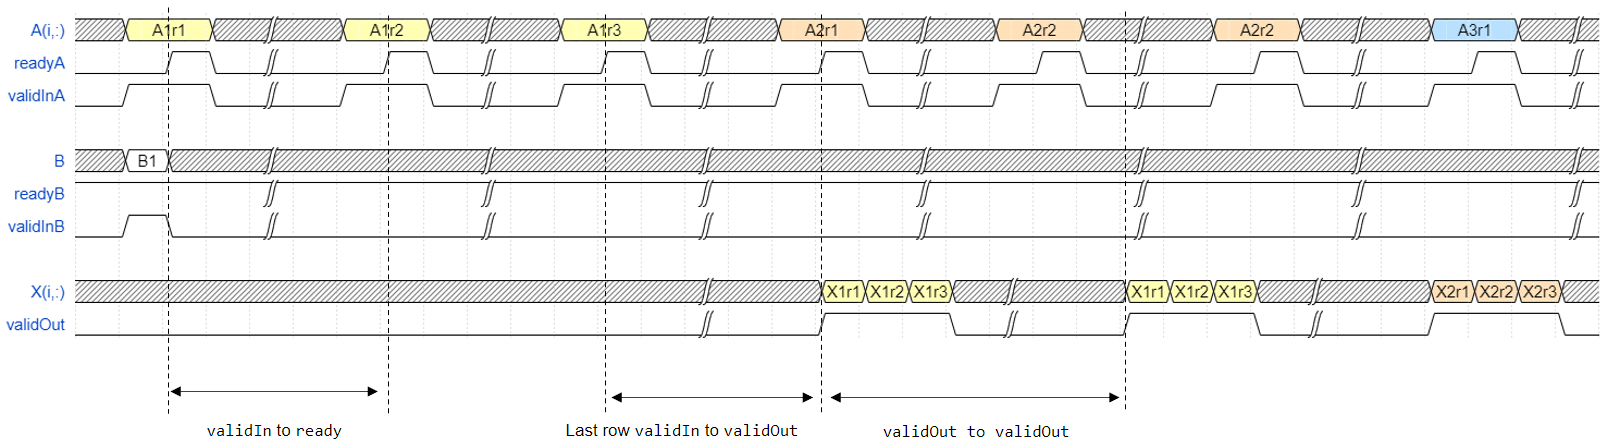 Timing diagram for the Burst Asynchronous Matrix Solve Using Q-less QR Decomposition blocks.